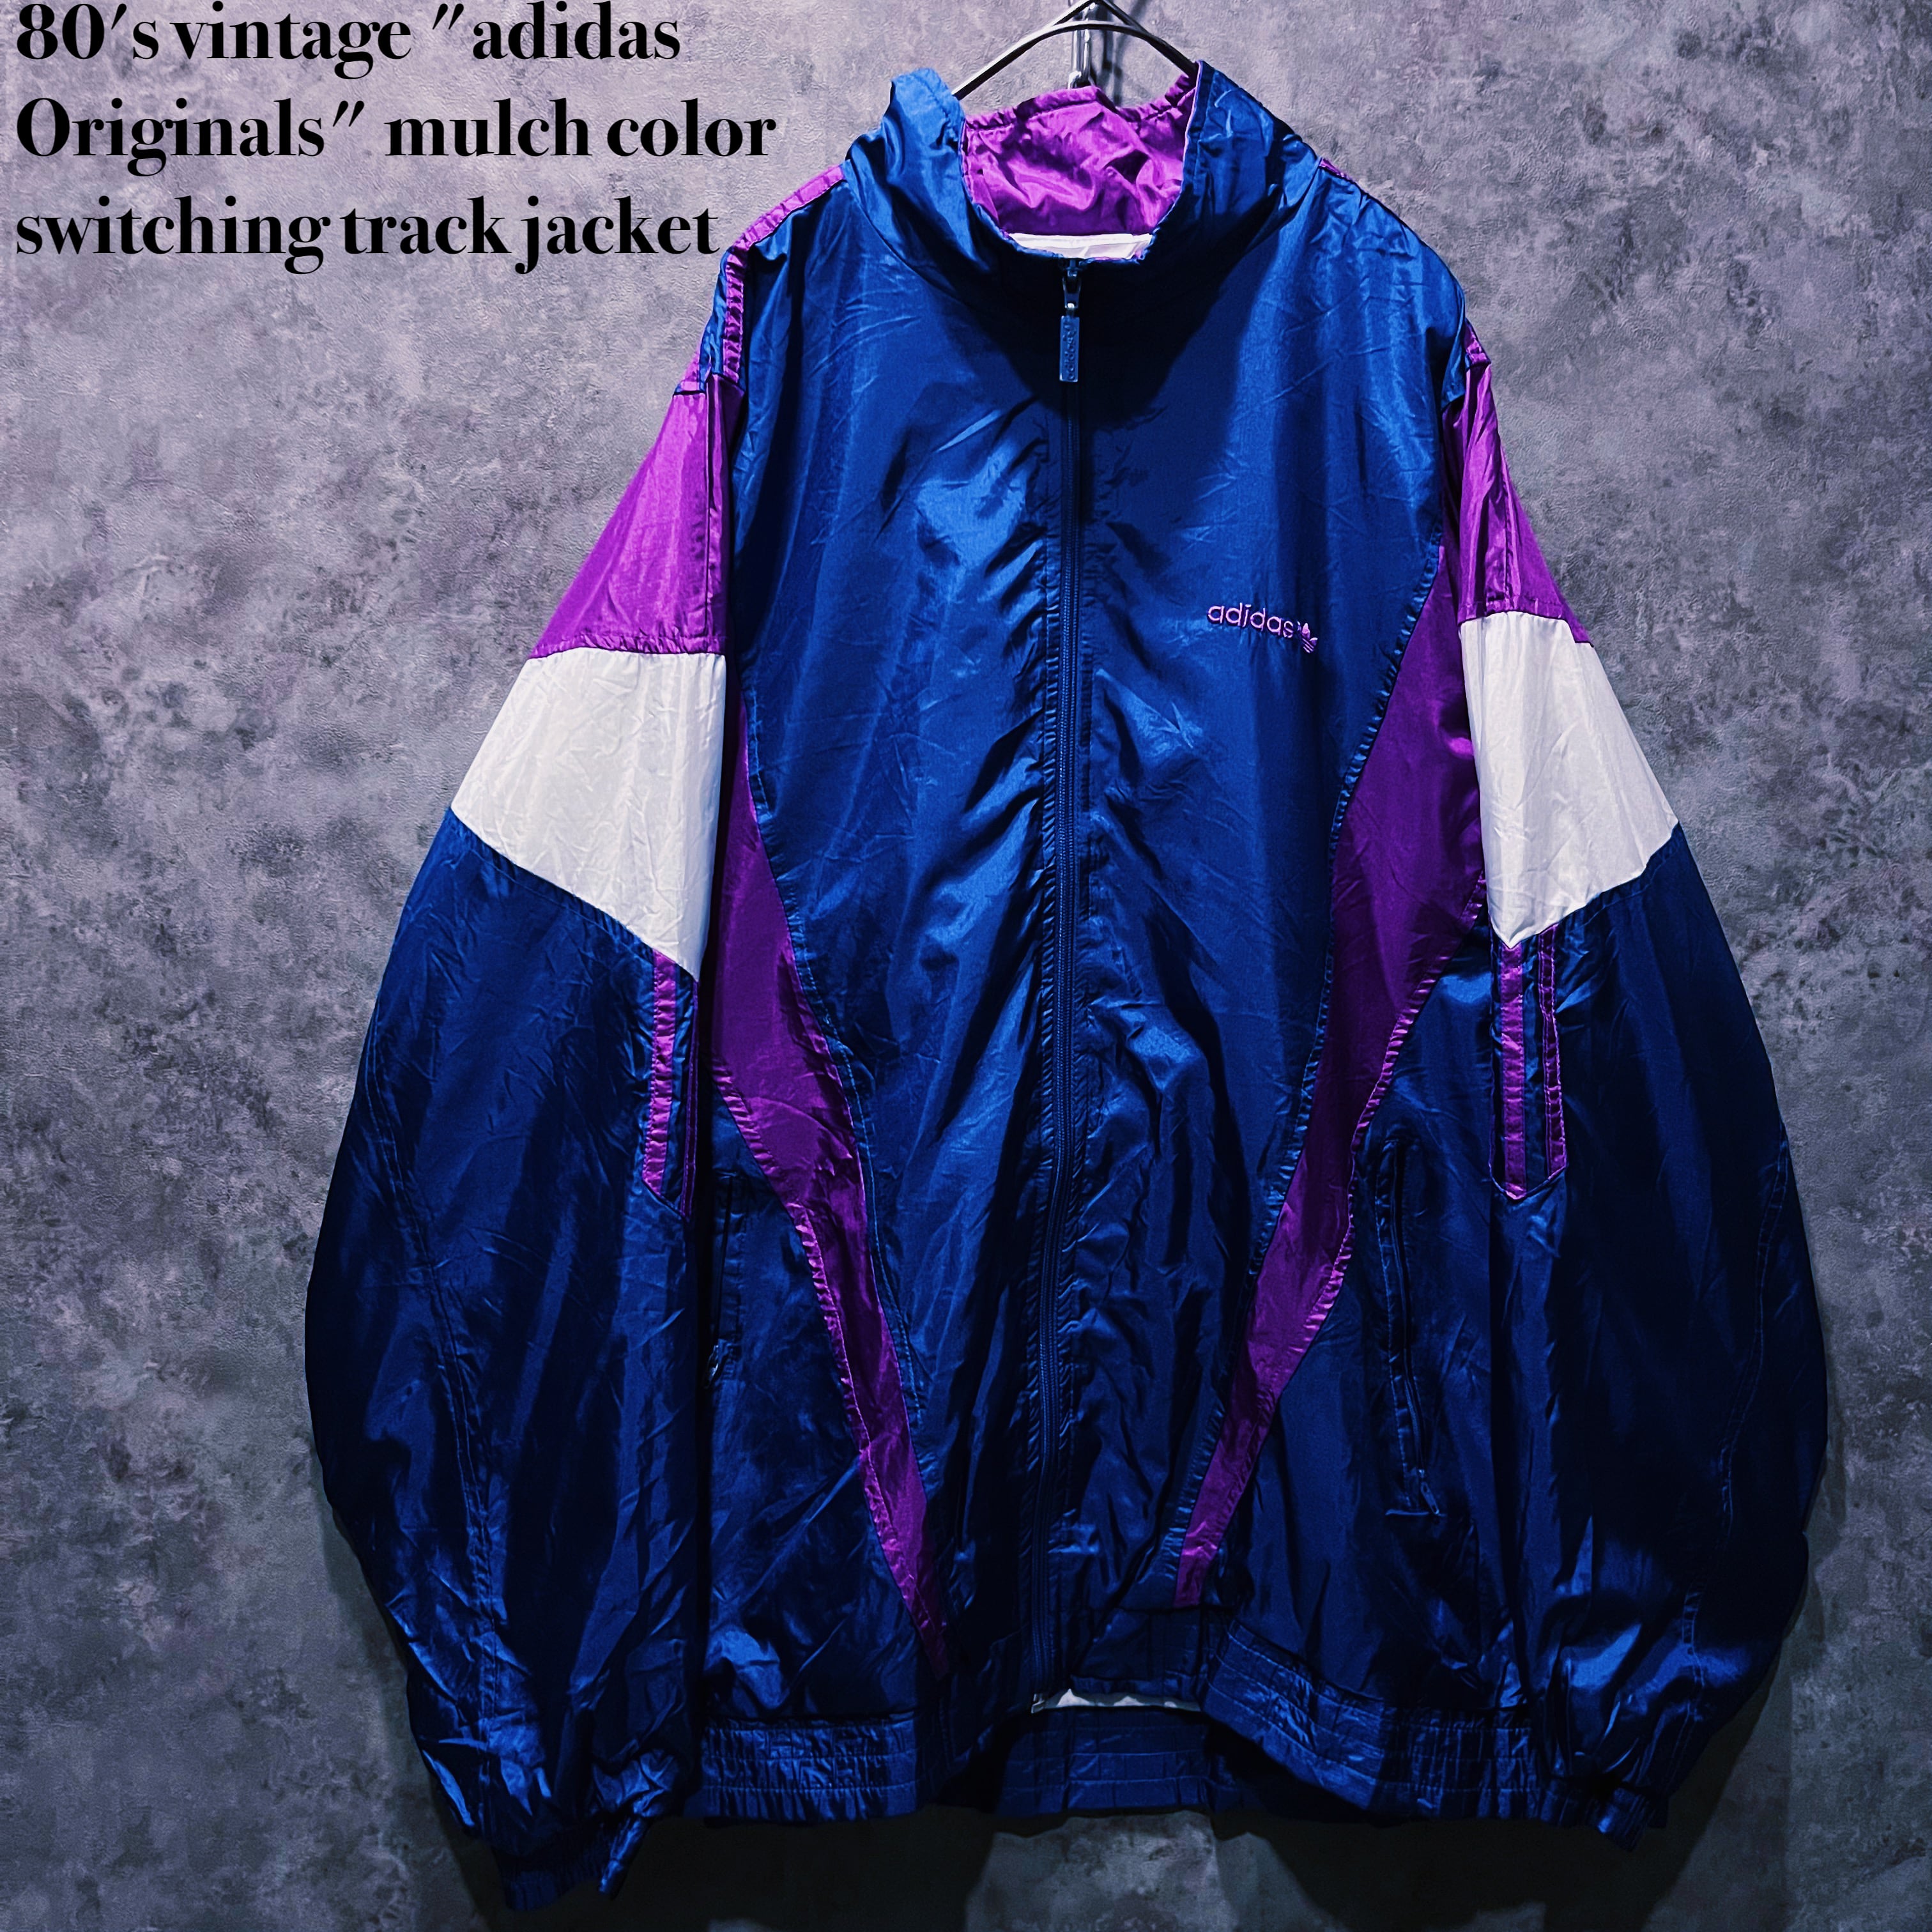 morgue slogan Uddrag doppio】80's vintage "adidas Originals" mulch color switching track jacket |  ayne